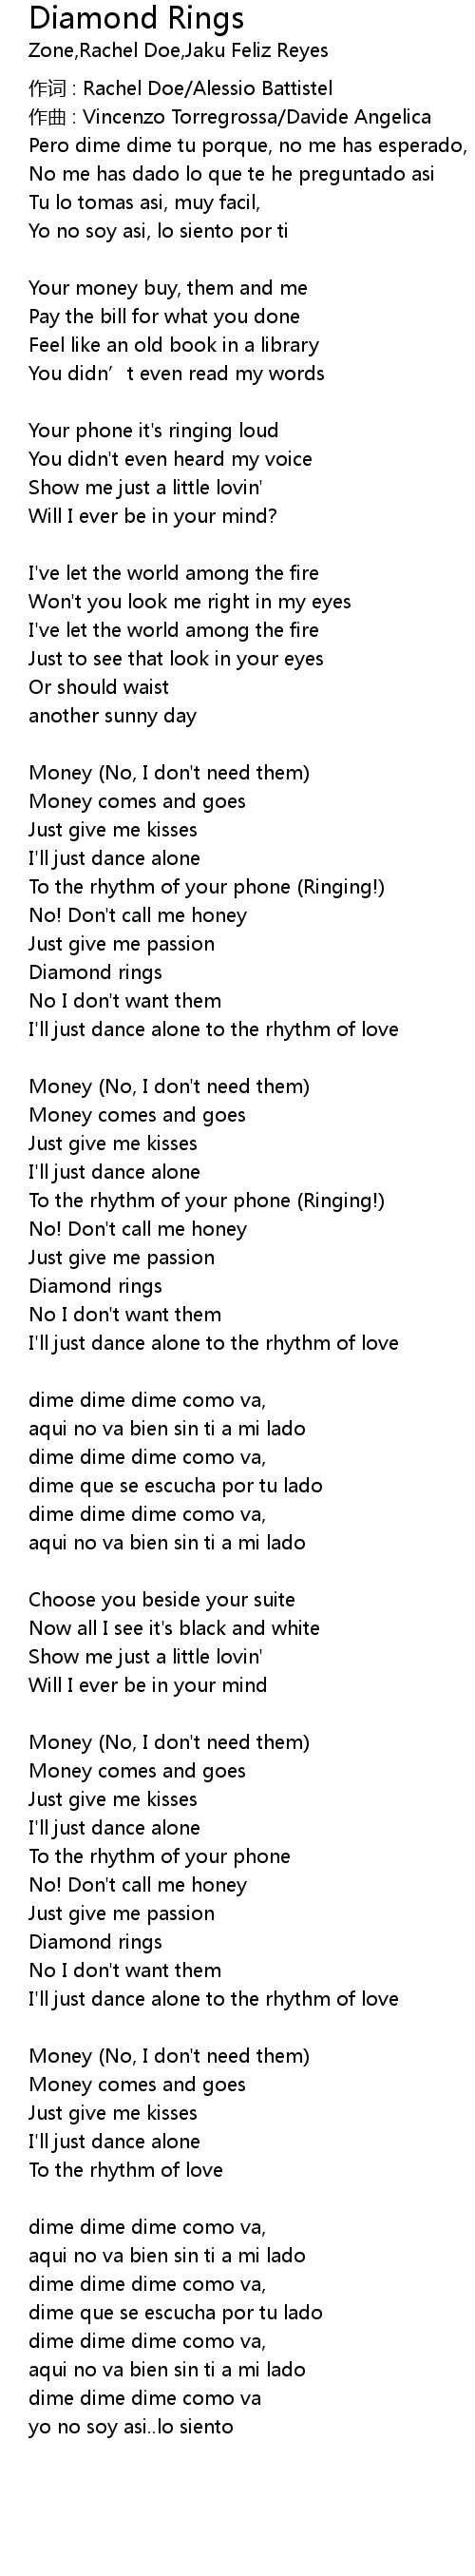 Diamond Rings Lyrics